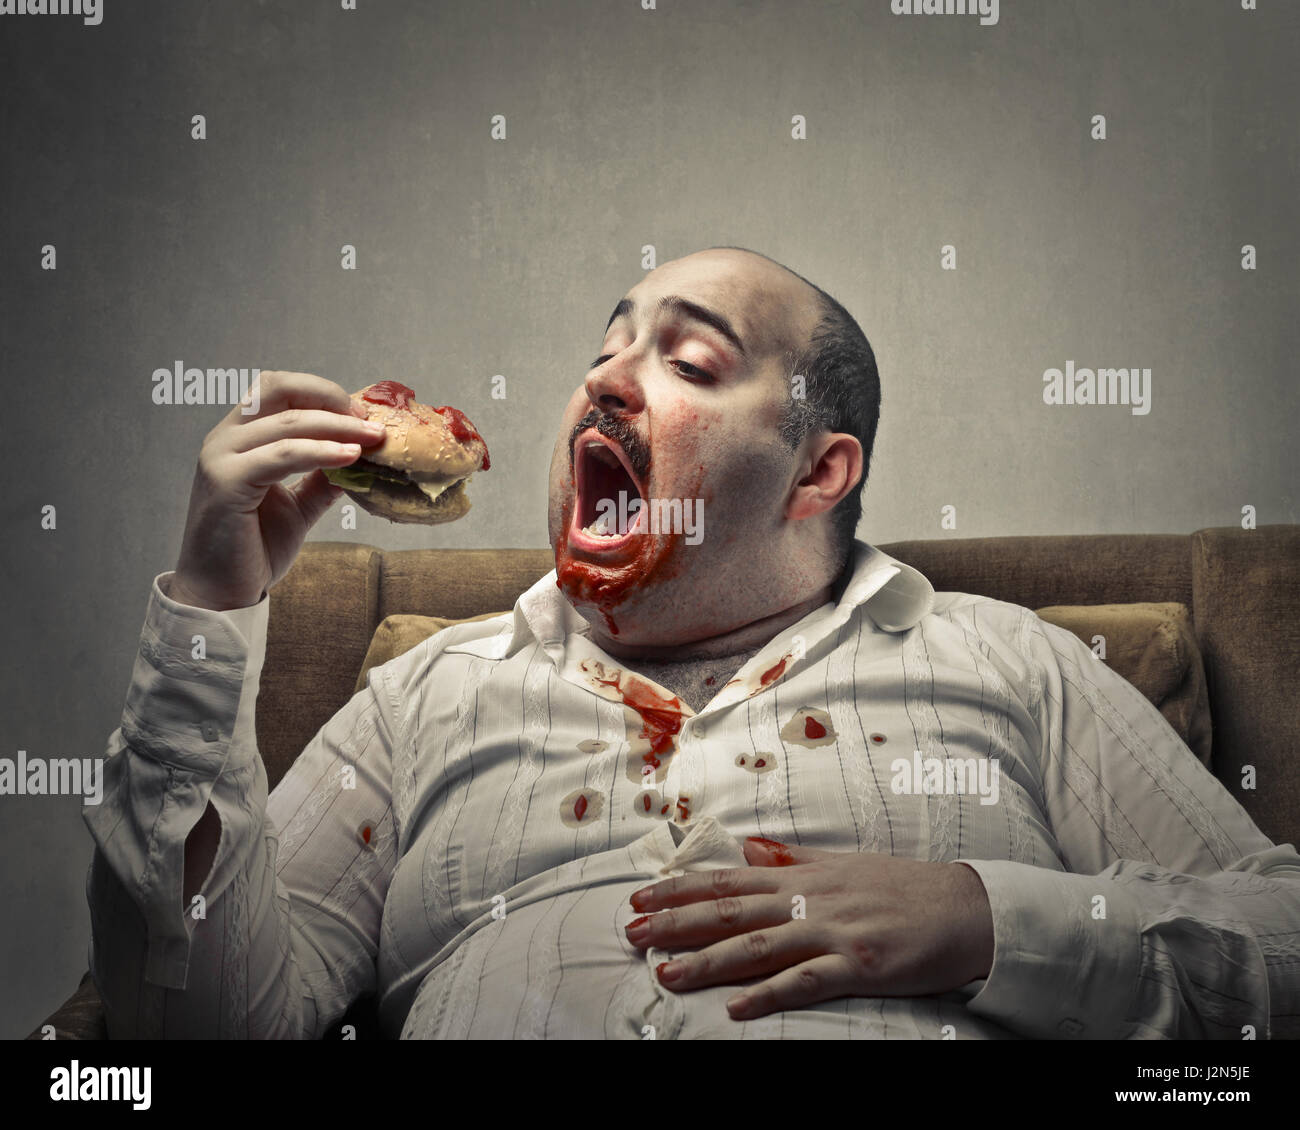 Obese Man Eating Hamburger Stock Photo Alamy